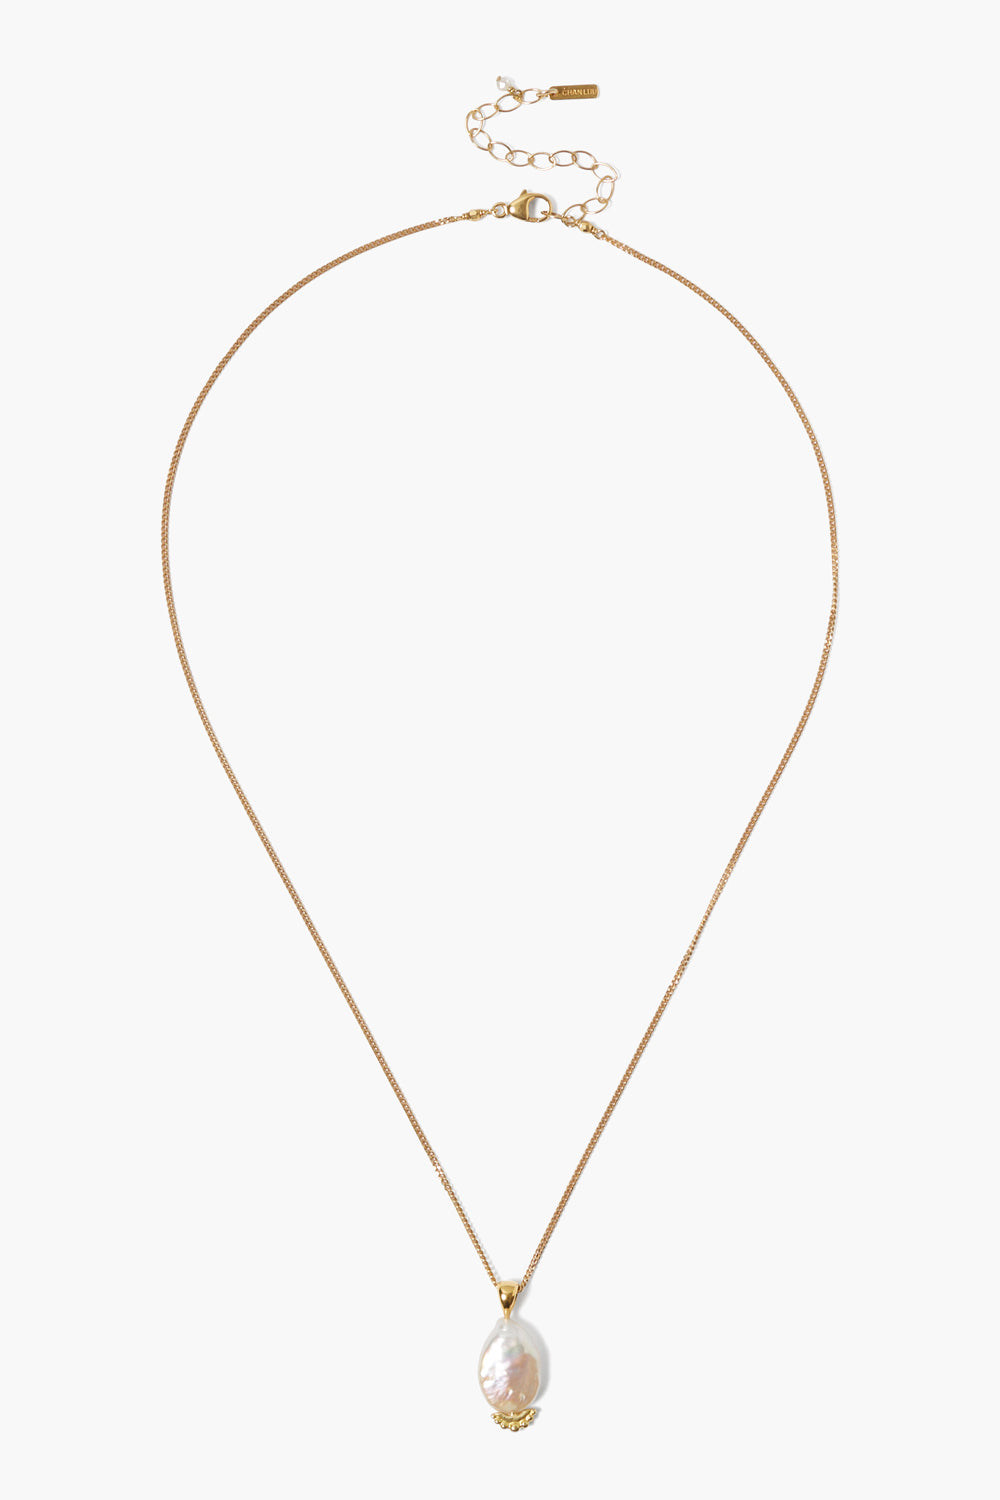 Jaya Pendant Necklace - White Pearl